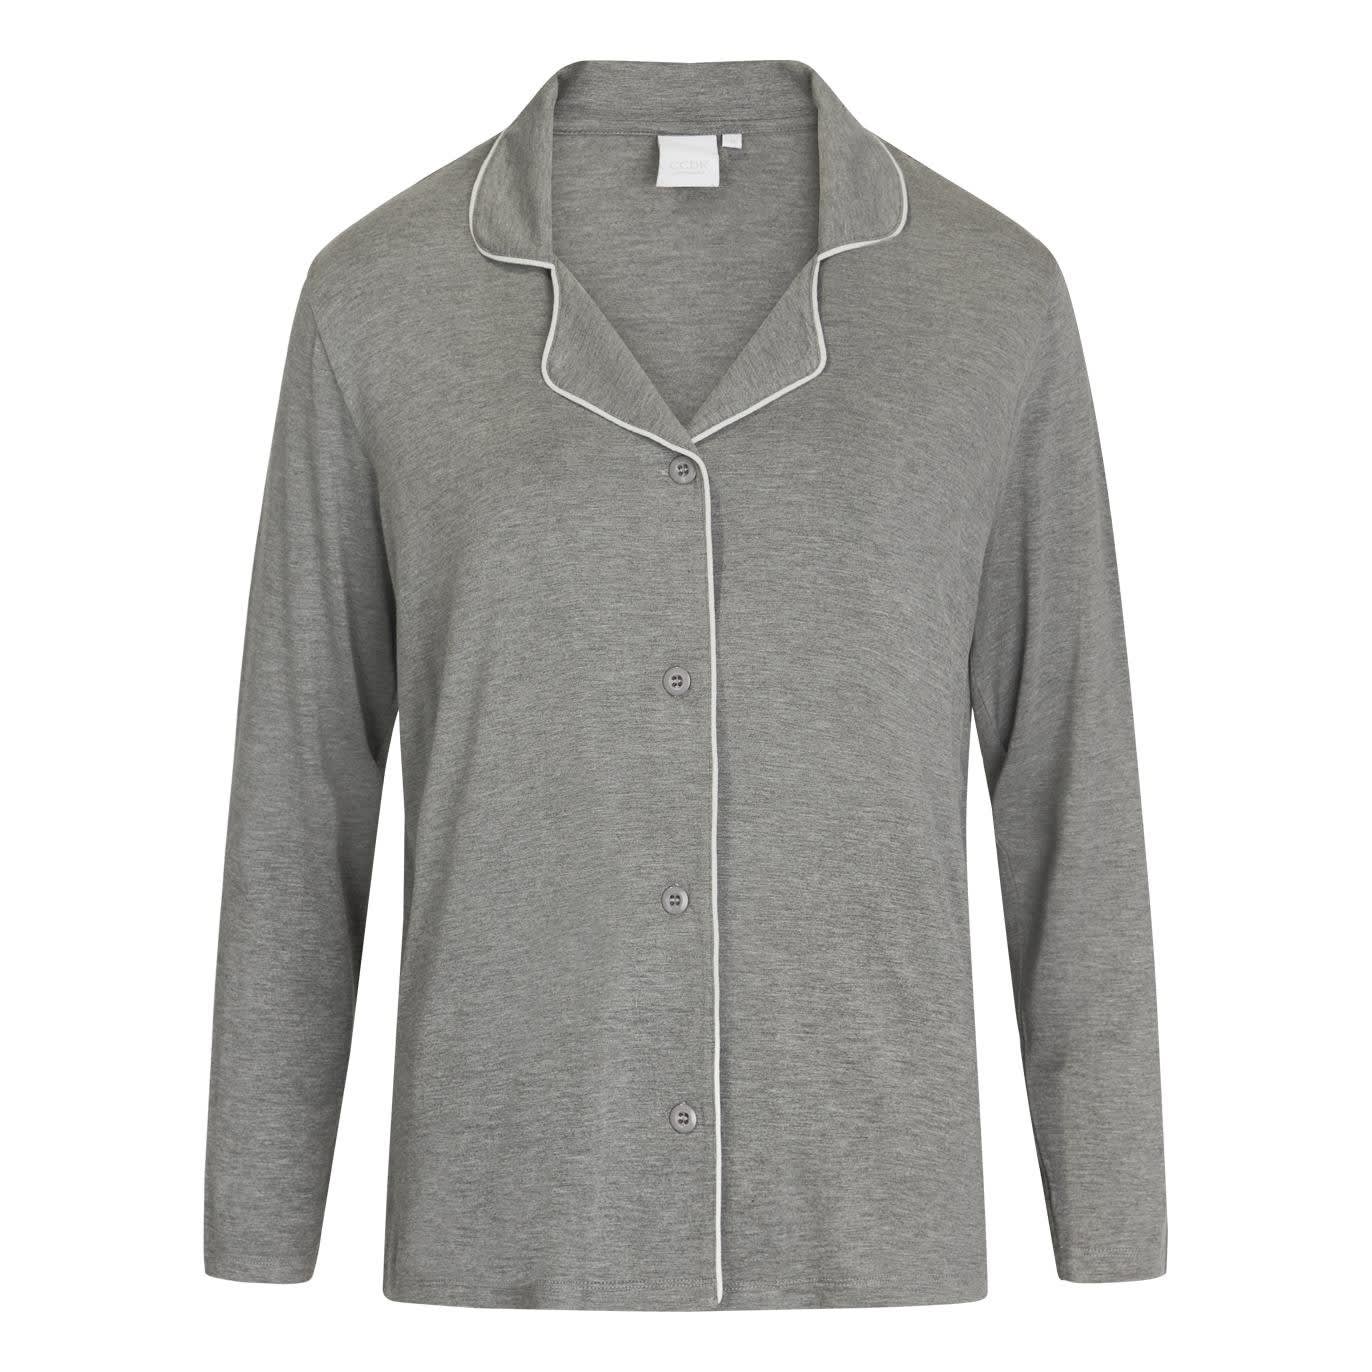 Ccdk Joy Pajamas Shirt Grey Melange, grey melange